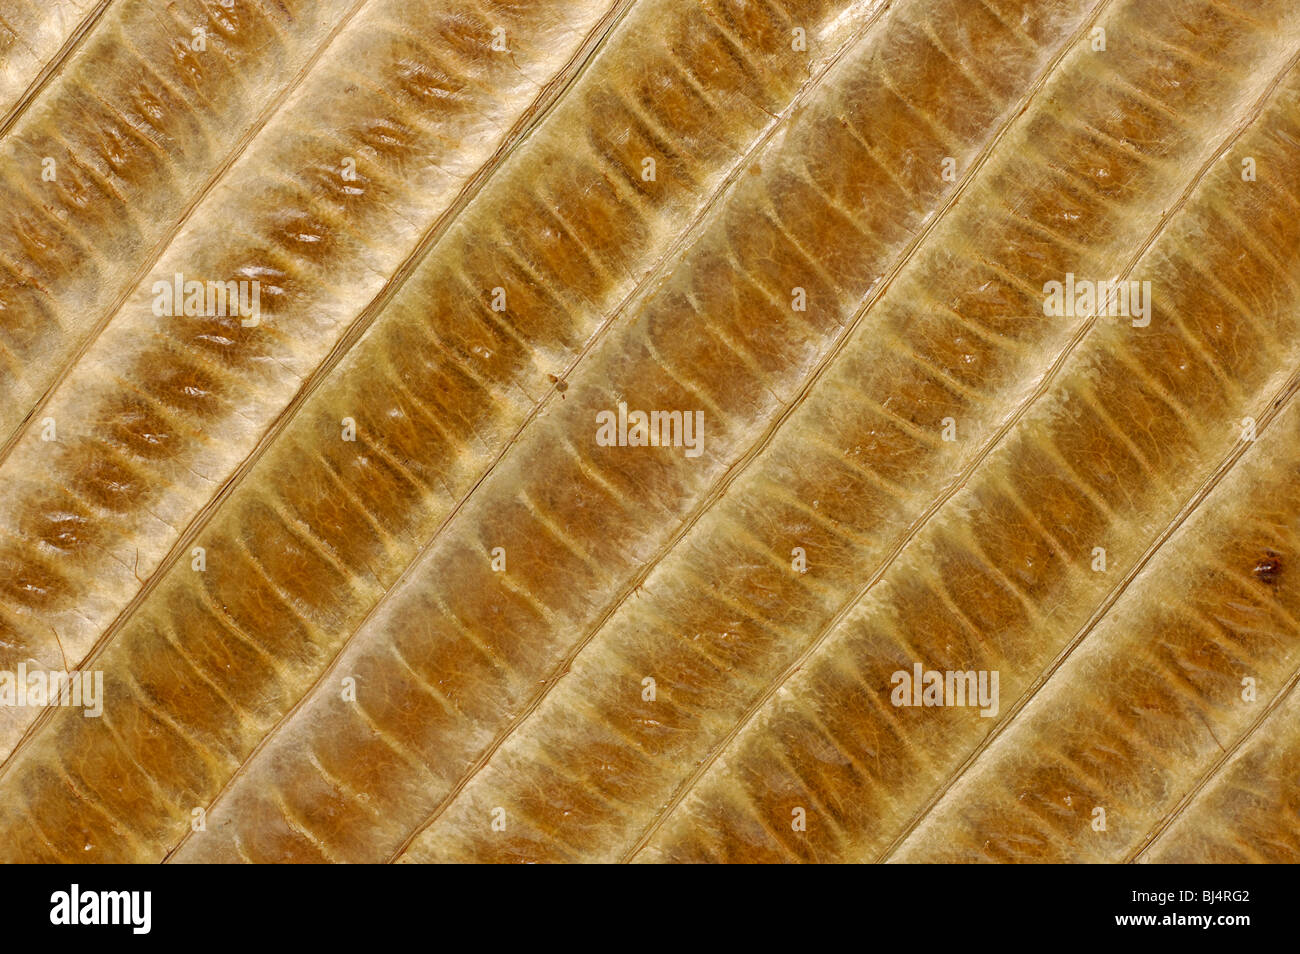 Bambus Blätter abstrakte organische braunen detaillierte natürliche Hintergrundtextur Stockfoto